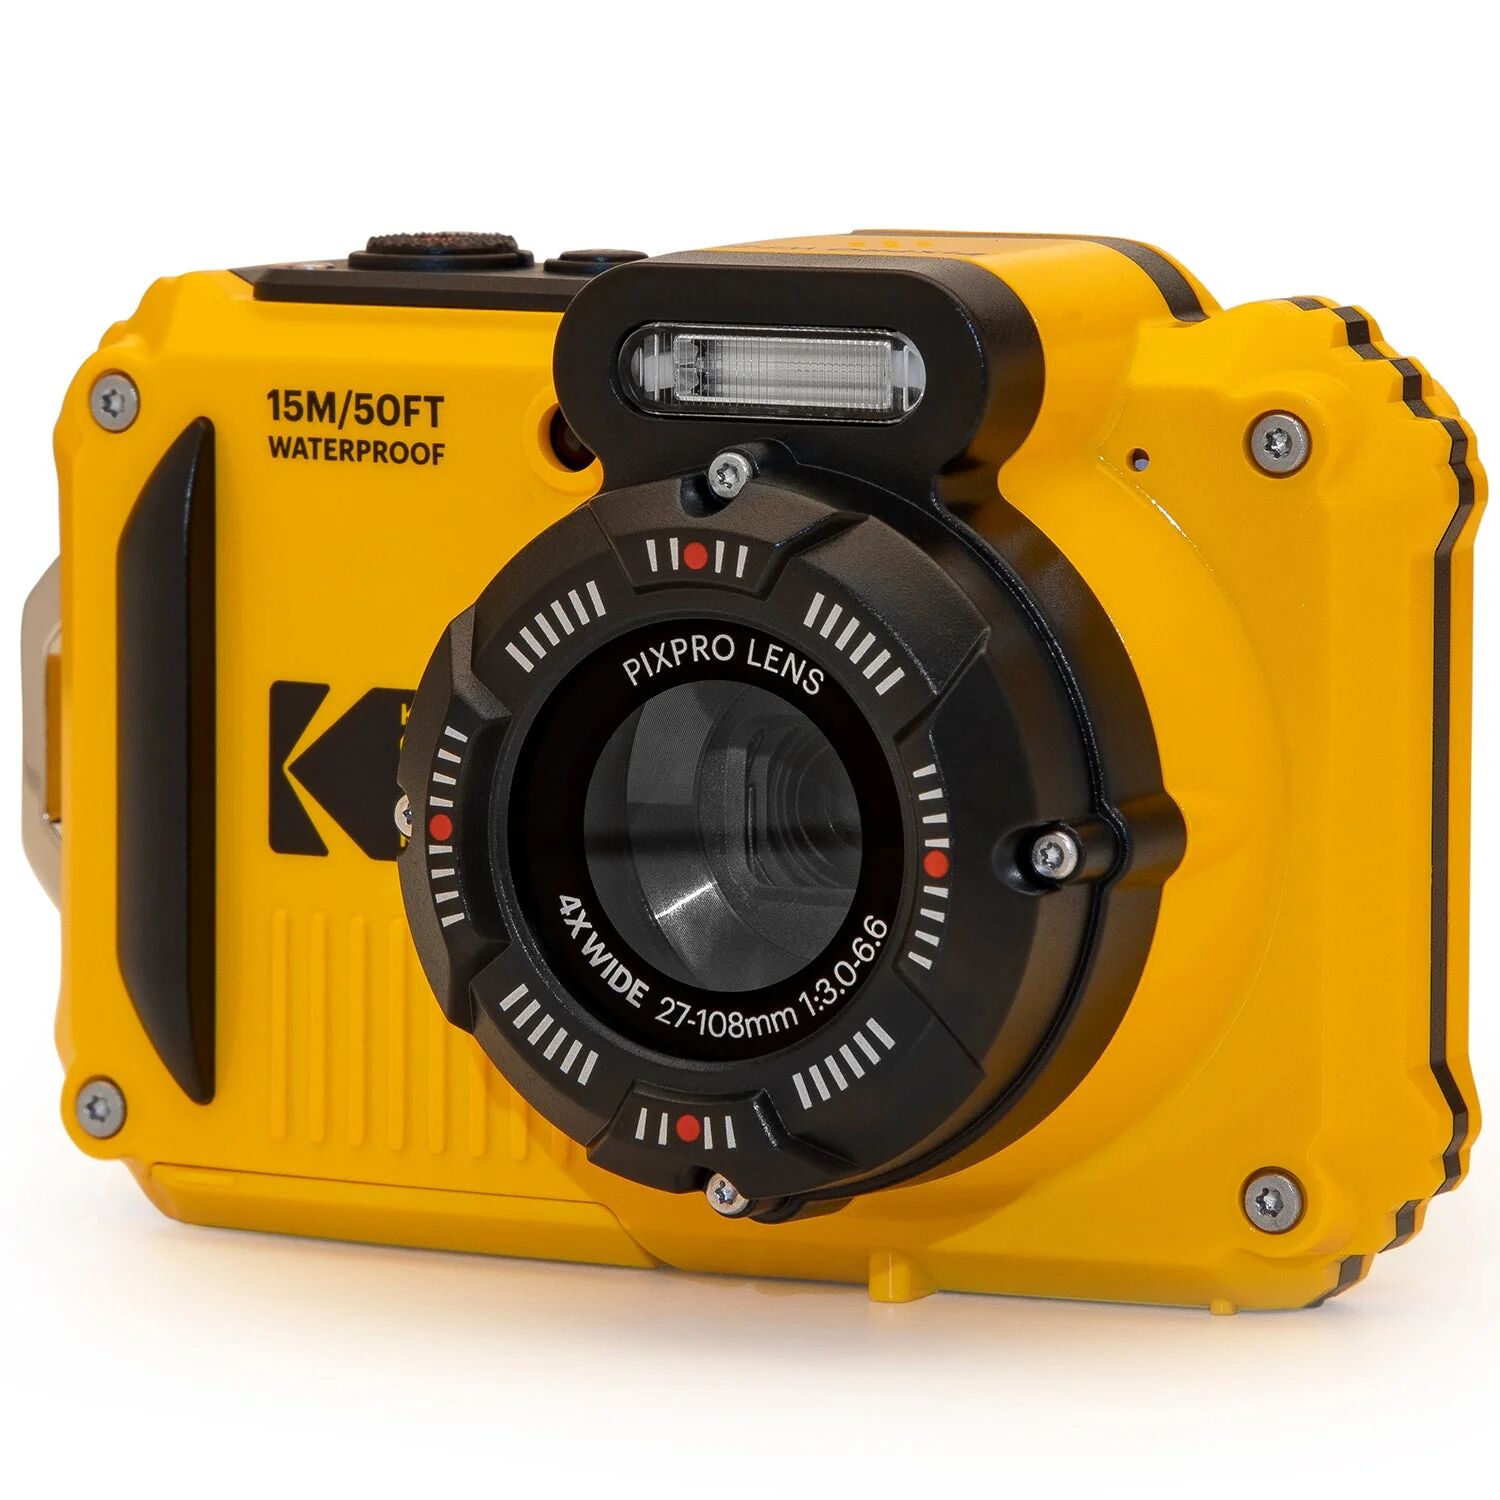 Kodak pixpro wpz2 fotocamera digitale compatta 16 mpixel impermeabile e antiurto giallo